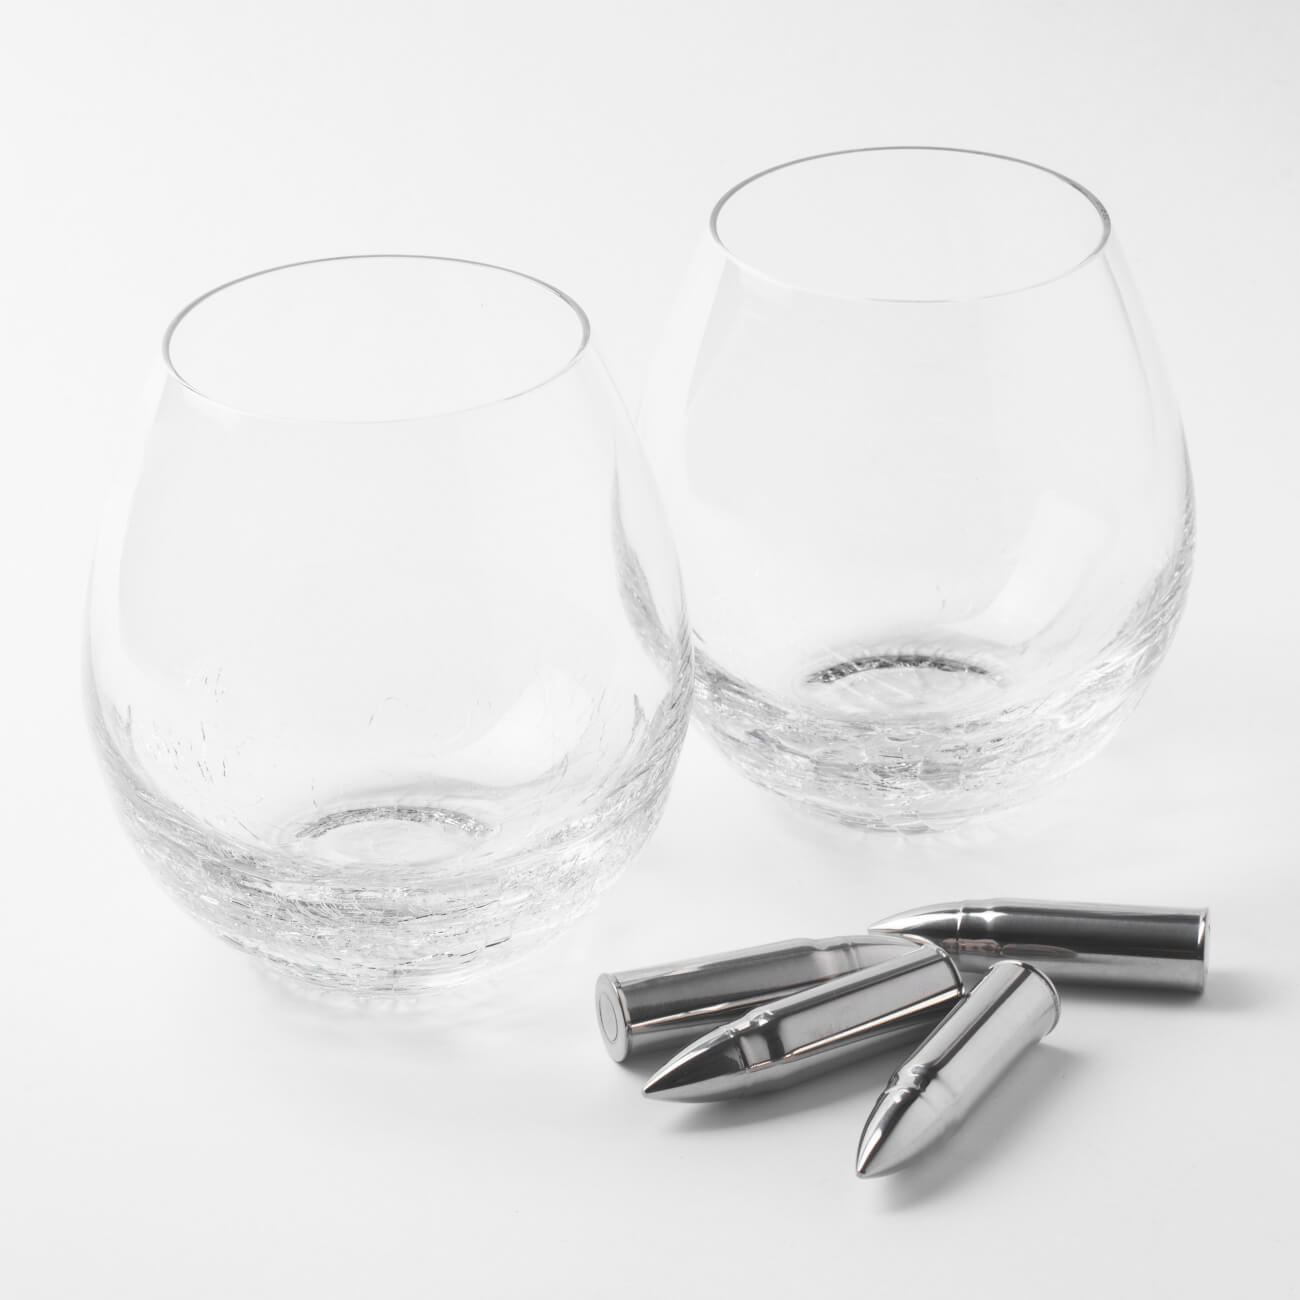 Набор для виски, 2 перс, 6 пр, стаканы/кубики, стекло/сталь, Кракелюр, Пули, Bullet изображение № 1